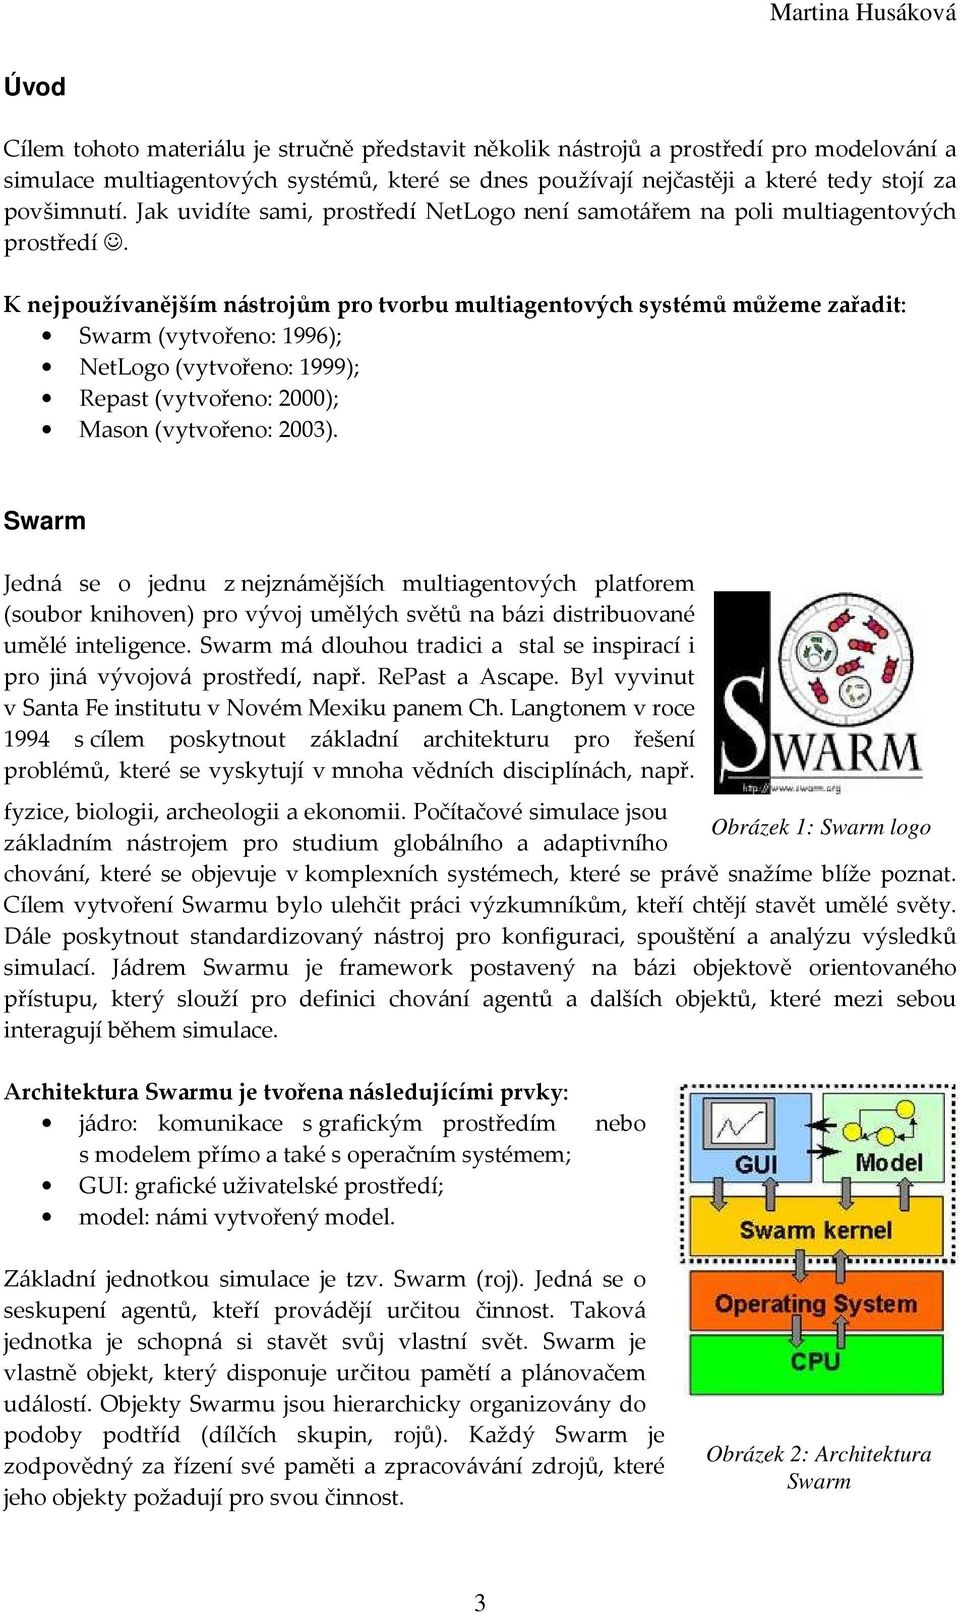 K nejpoužívanějším nástrojům pro tvorbu multiagentových systémů můžeme zařadit: Swarm (vytvořeno: 1996); NetLogo (vytvořeno: 1999); Repast (vytvořeno: 2000); Mason (vytvořeno: 2003).